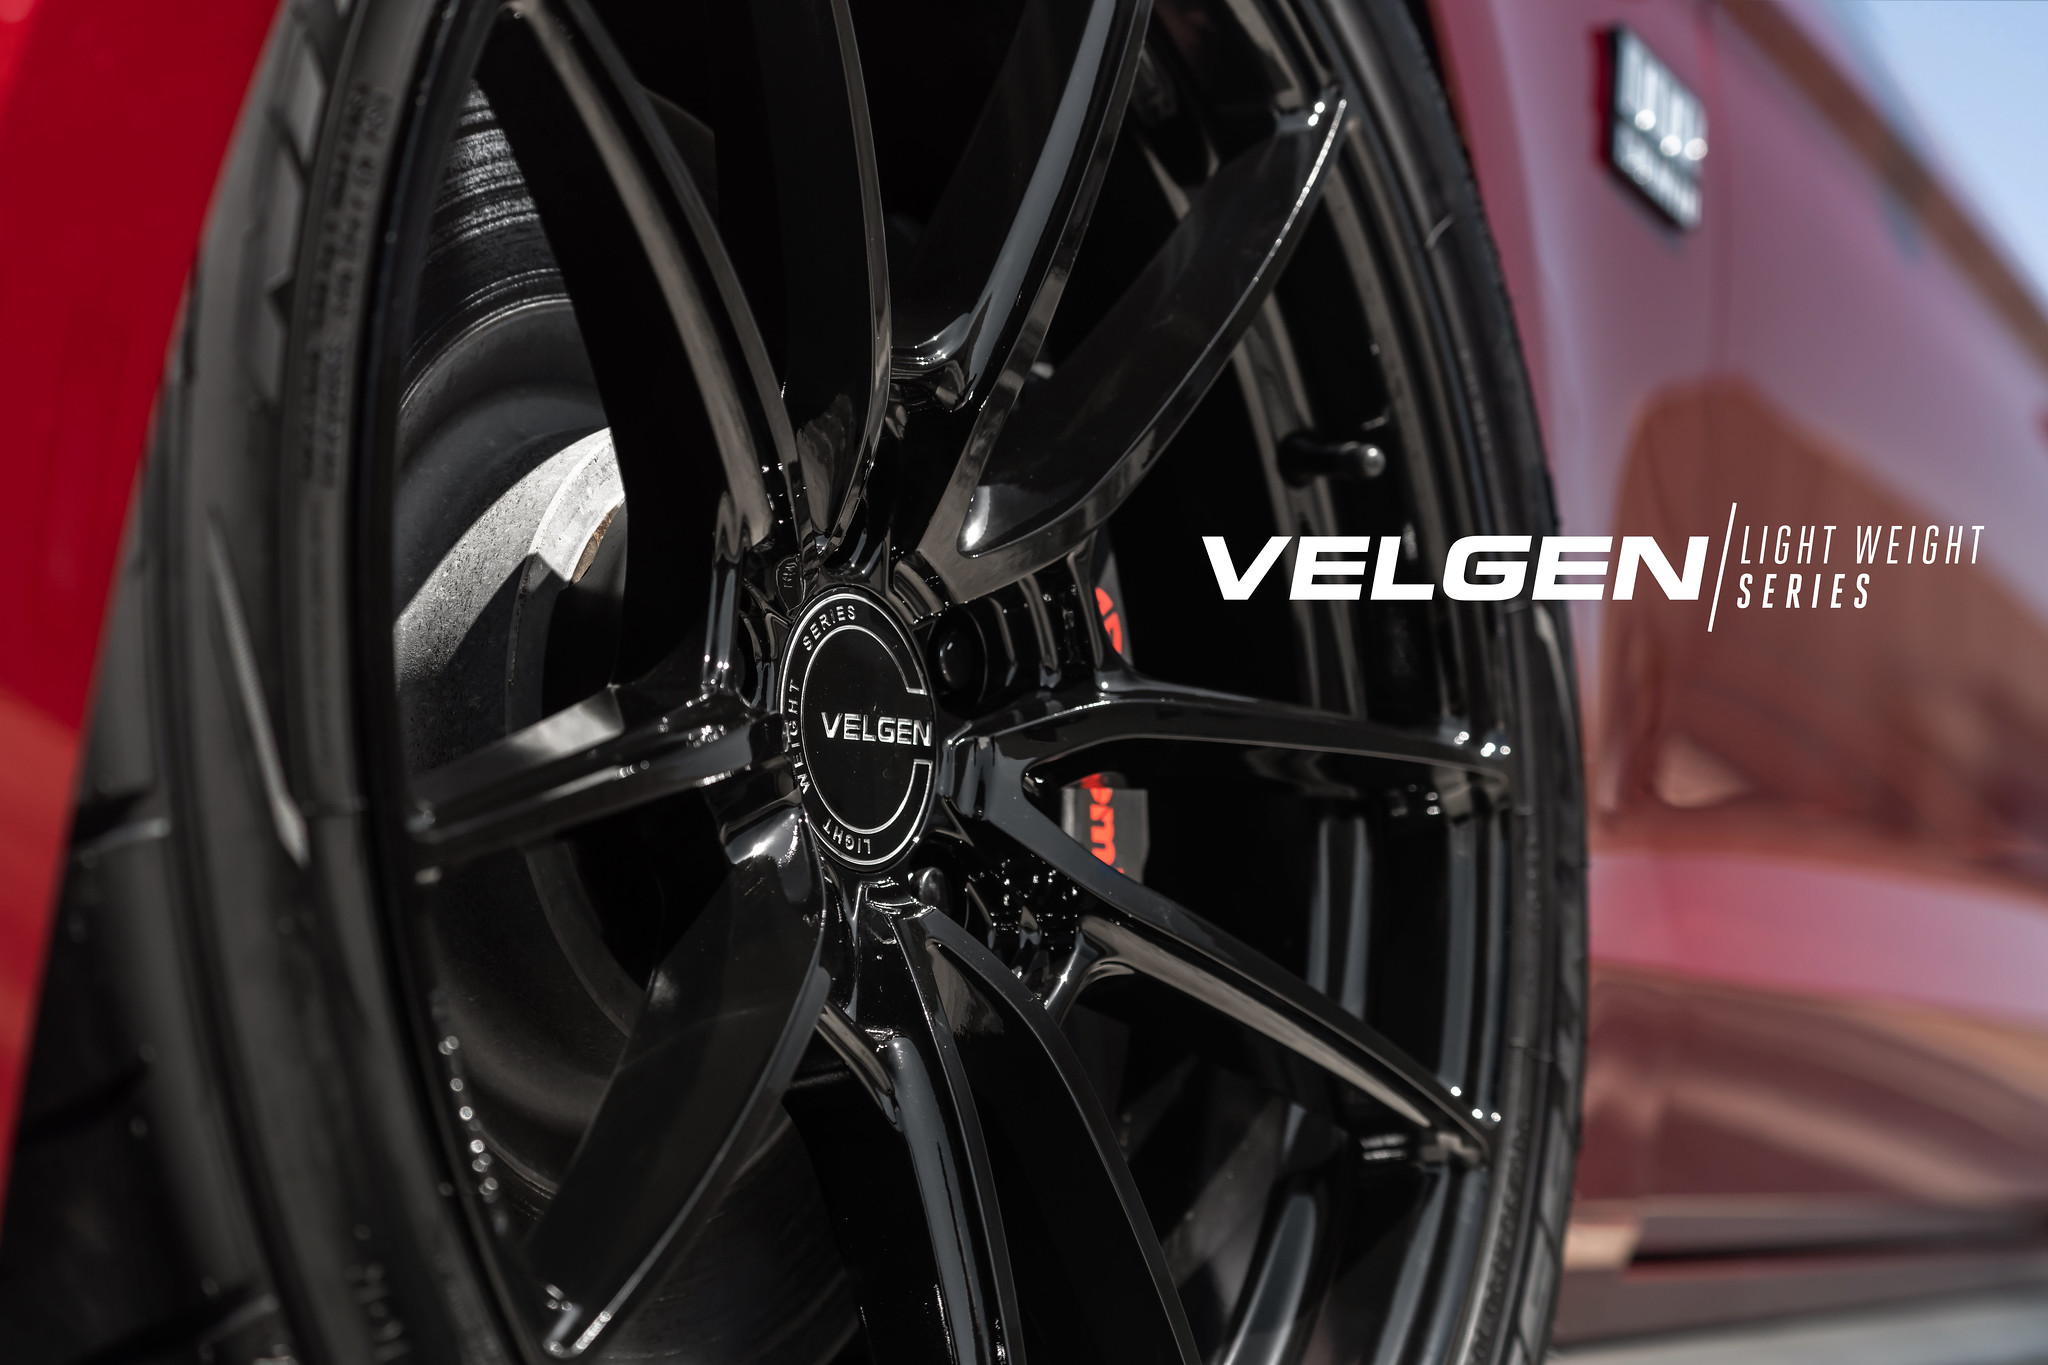 S650 Mustang Velgen wheels for your S650 Mustang | Vibe Motorsports 48233535351_47933fc62b_k